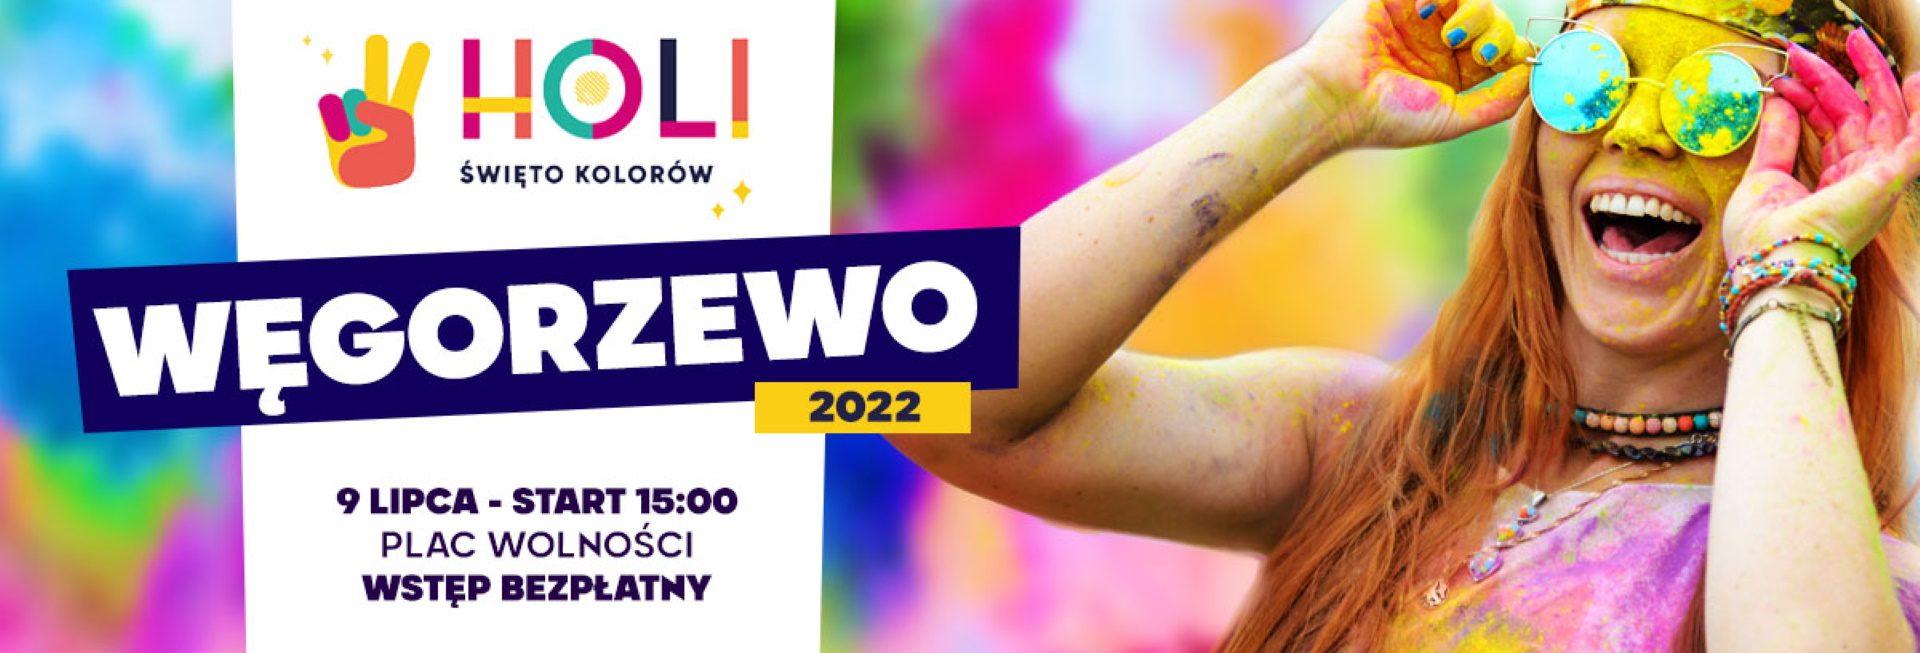 Plakat zapraszający do Węgorzewa na Holi Święto Kolorów Węgorzewo 2022.